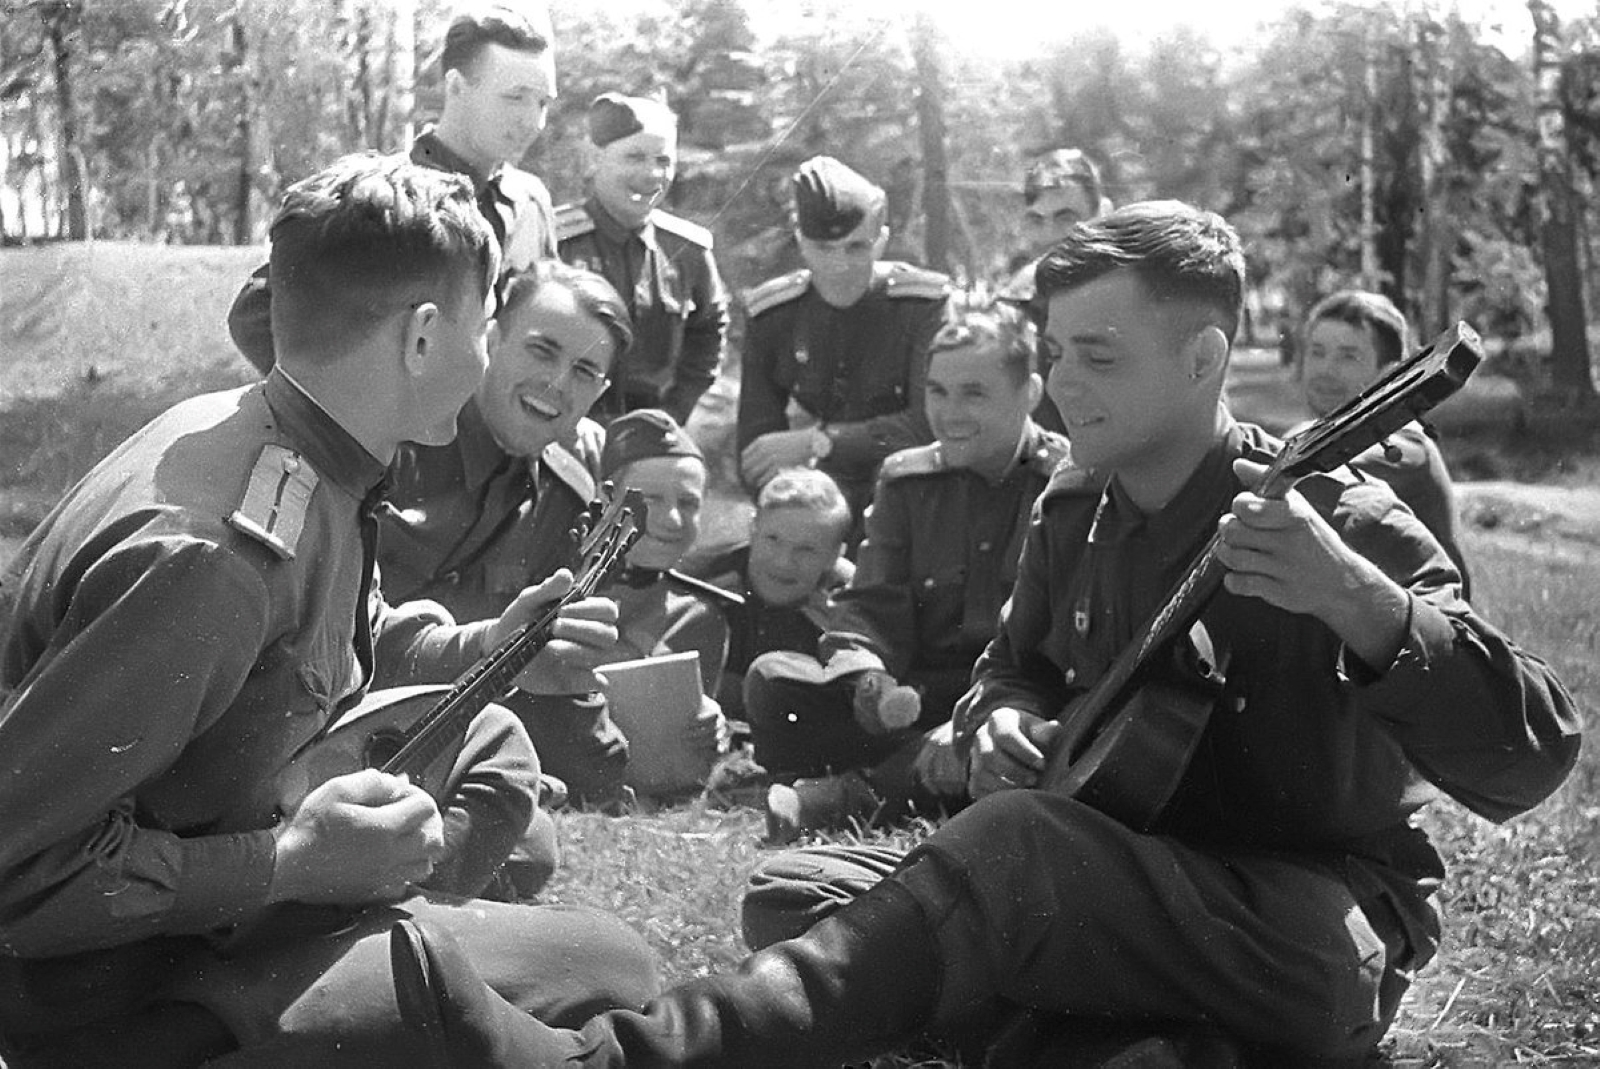 Песня о великой войне 1945. Солдаты Великой Отечественной войны. Военные фотографии. Молодые ребята на войне. Картинки о войне.